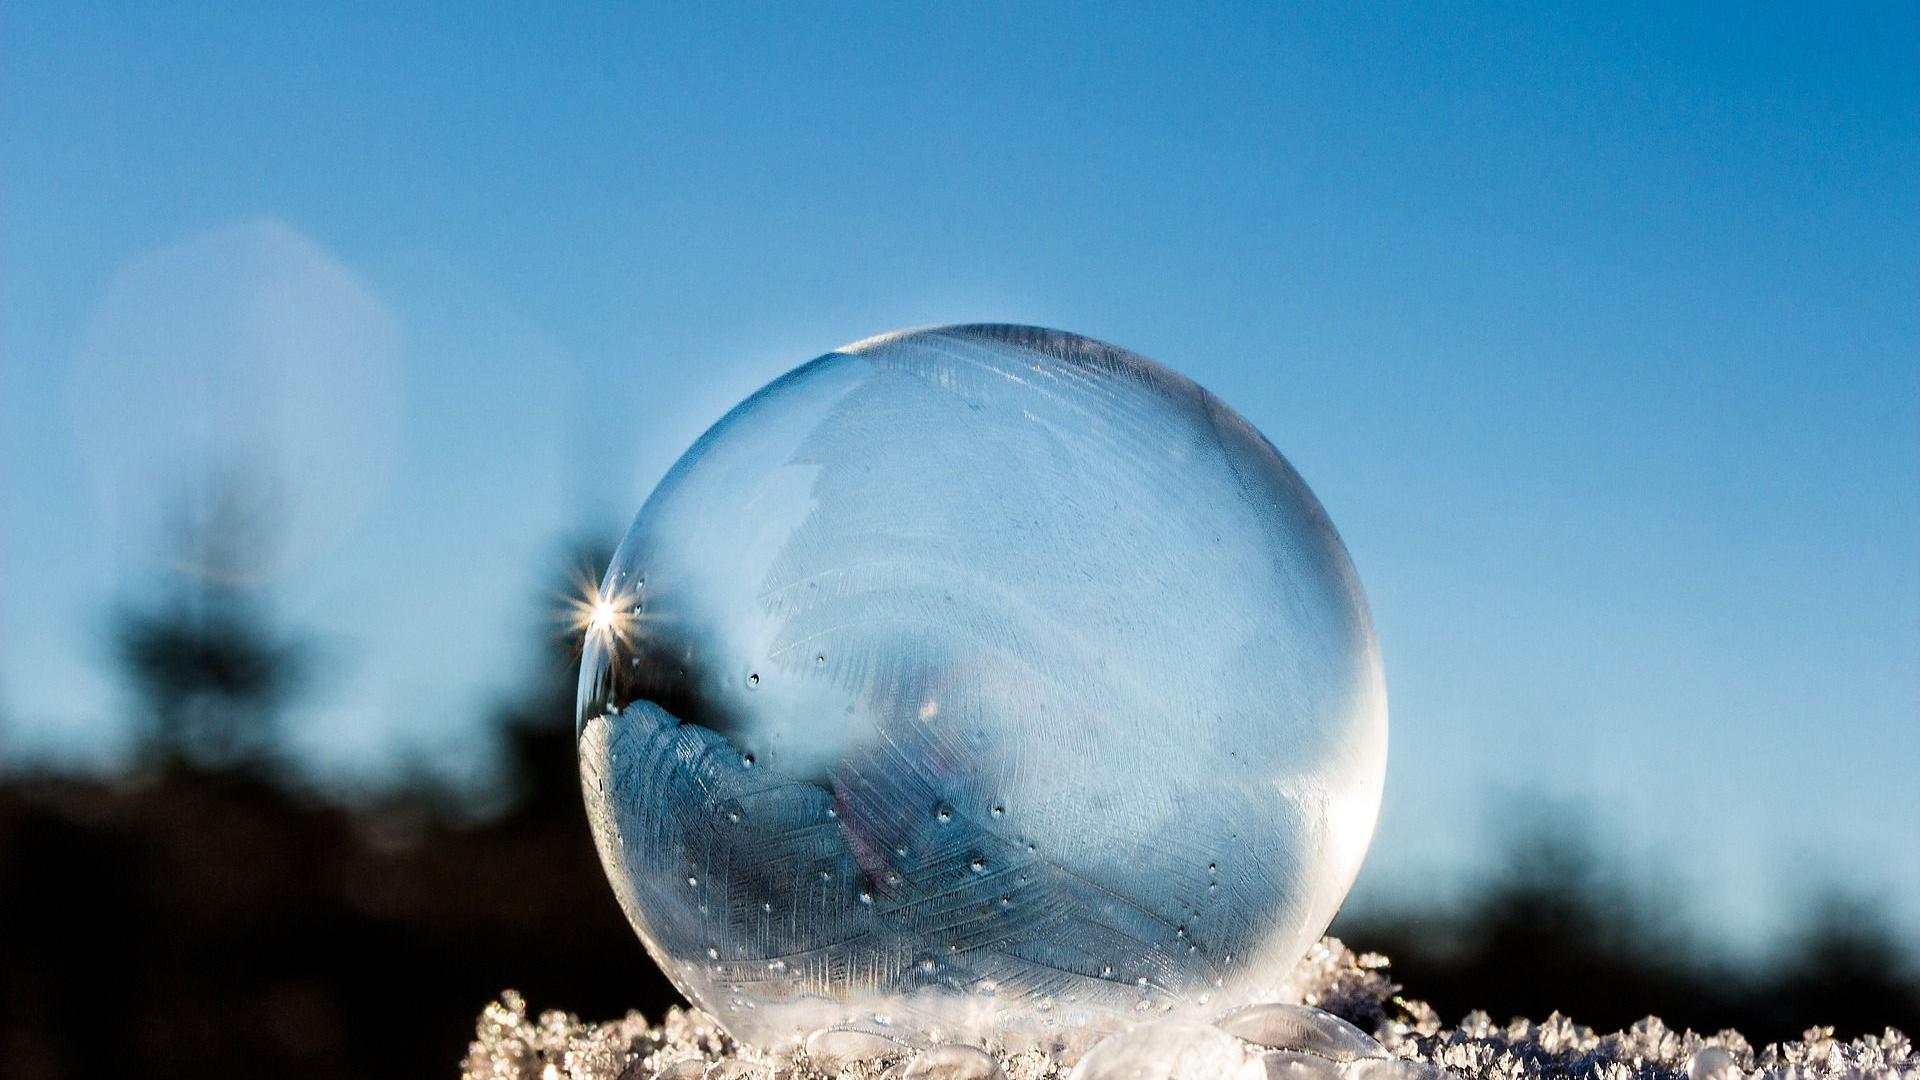 Stimmungsbild zum Beitrag: Es wird eine durchsichtige Eiskugel im Schnee mit blauem Himmel abgebildet.